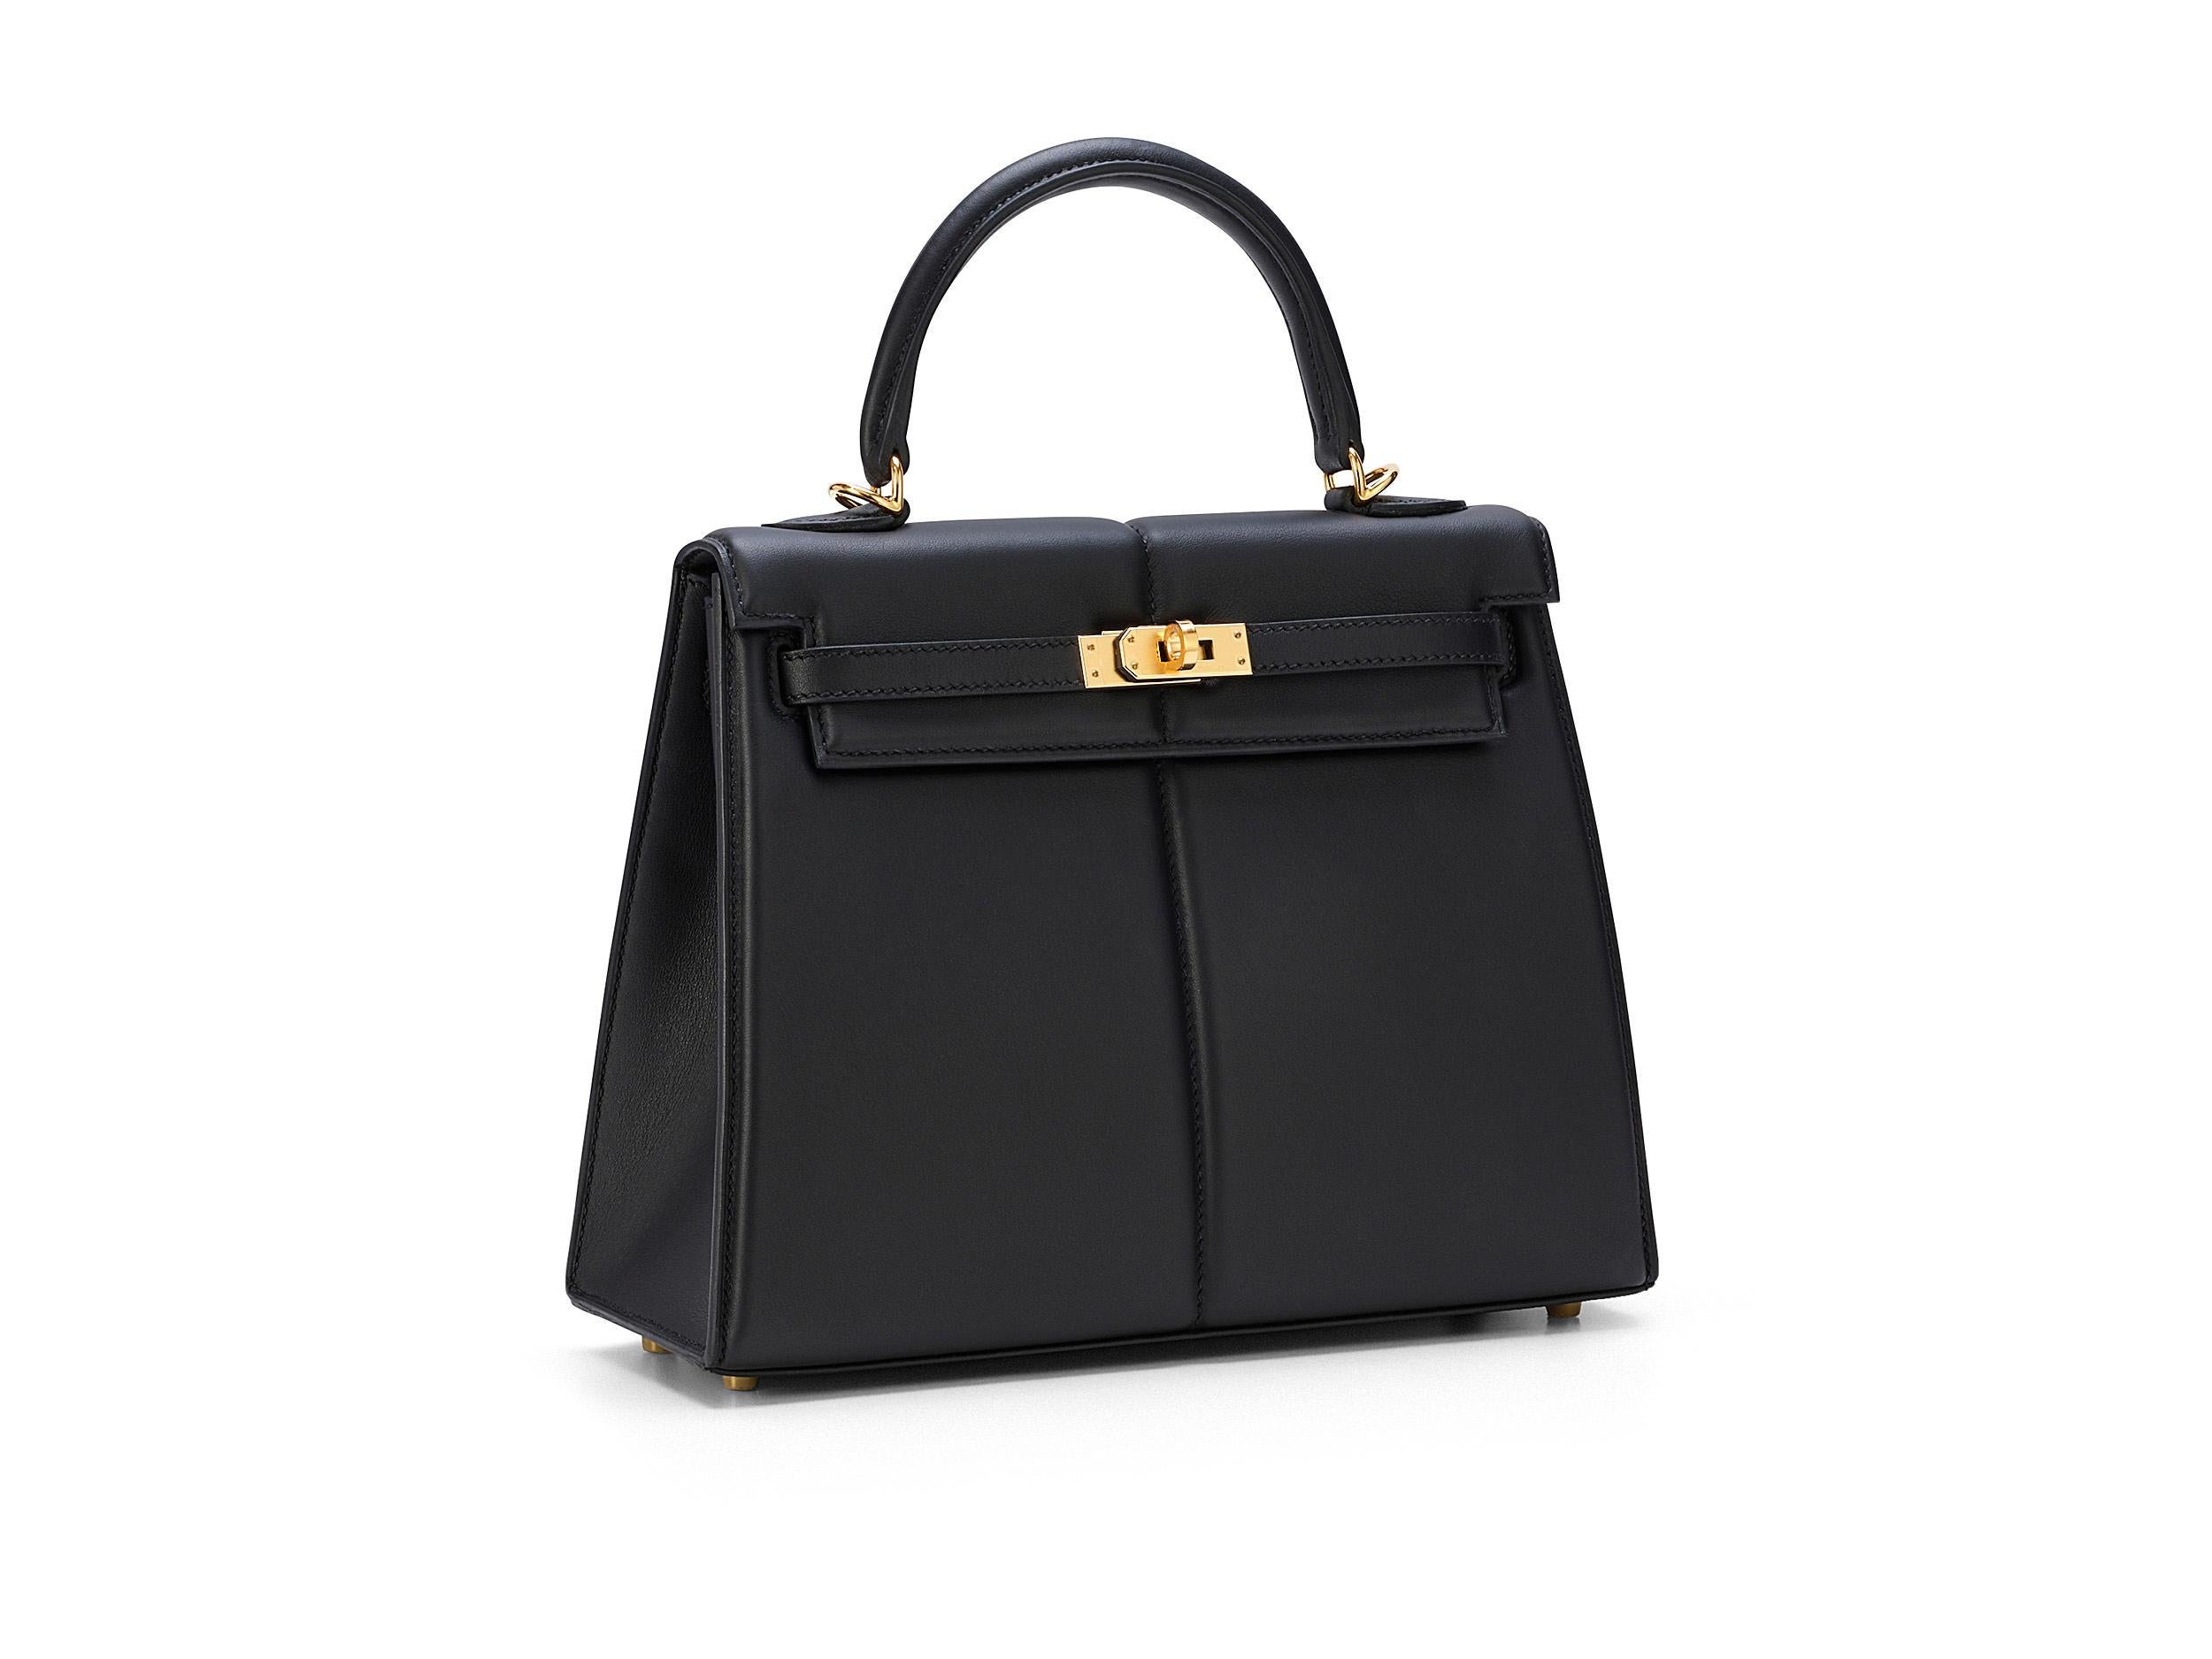 Hermès Kelly Padded 25 aus schwarzem und schwarzem Leder mit Goldbeschlägen. Die Tasche ist ungetragen und wird als komplettes Set inklusive der Originalquittung geliefert.  

Stempel U (2022) 

